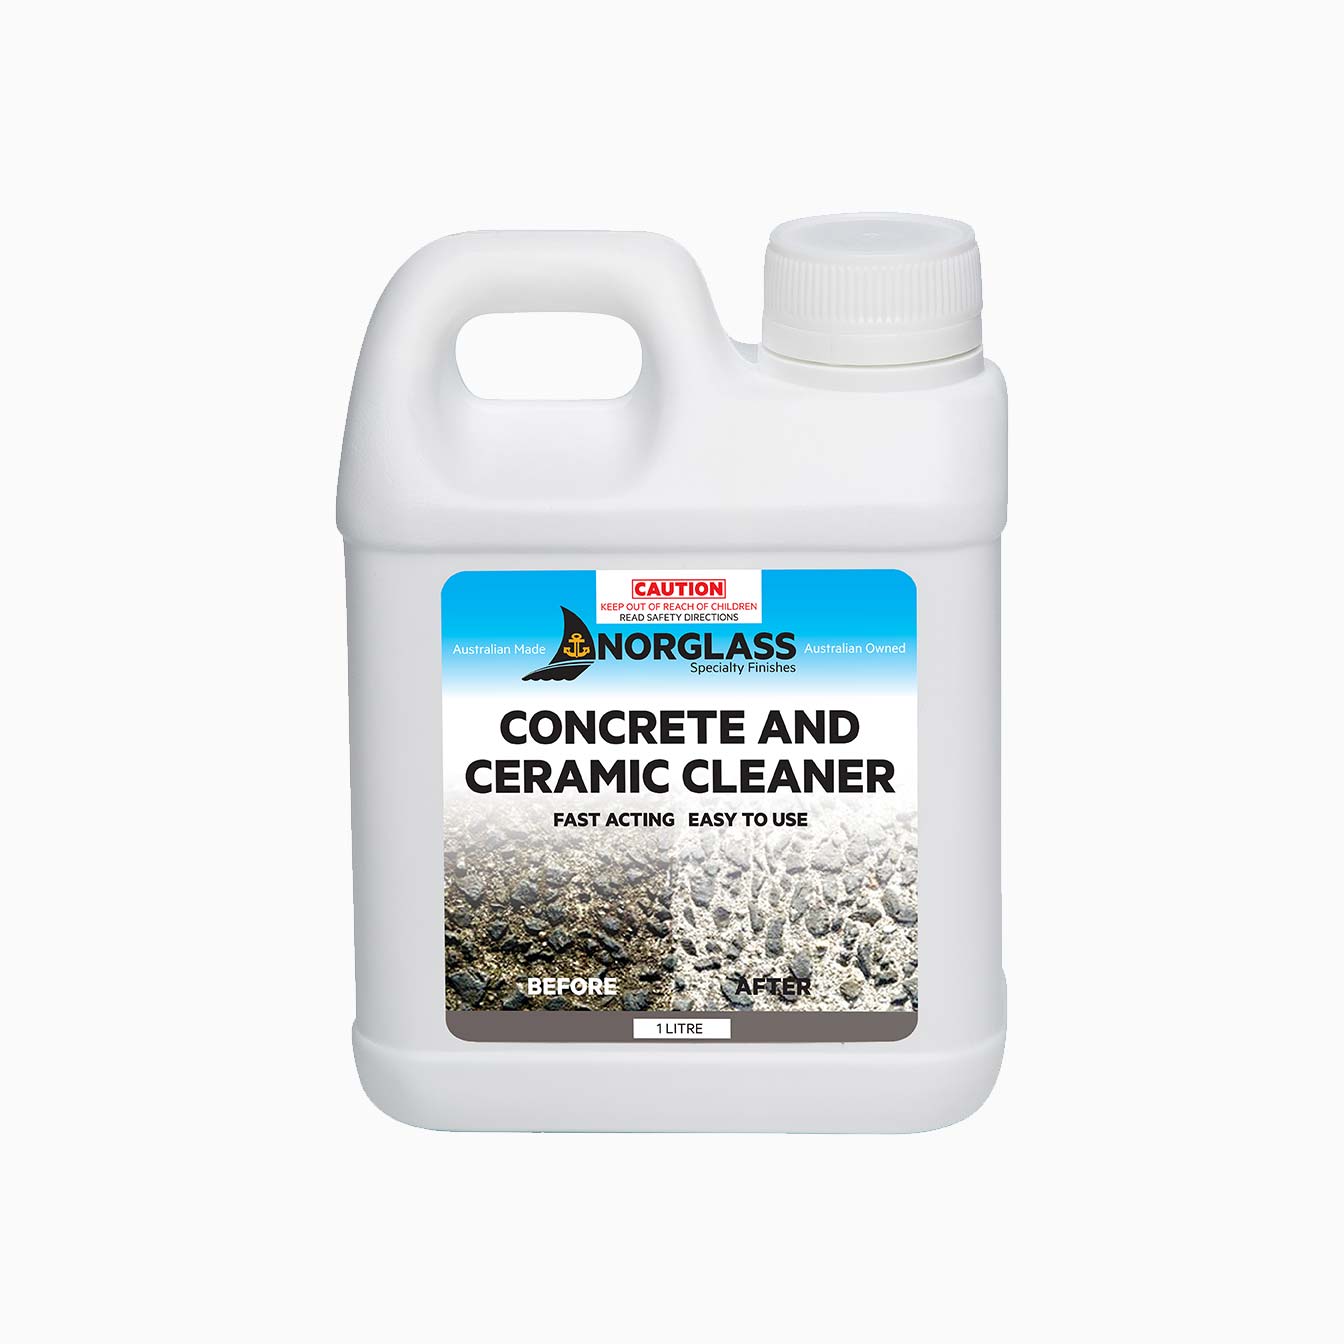 Concrete and Ceramic Cleaner